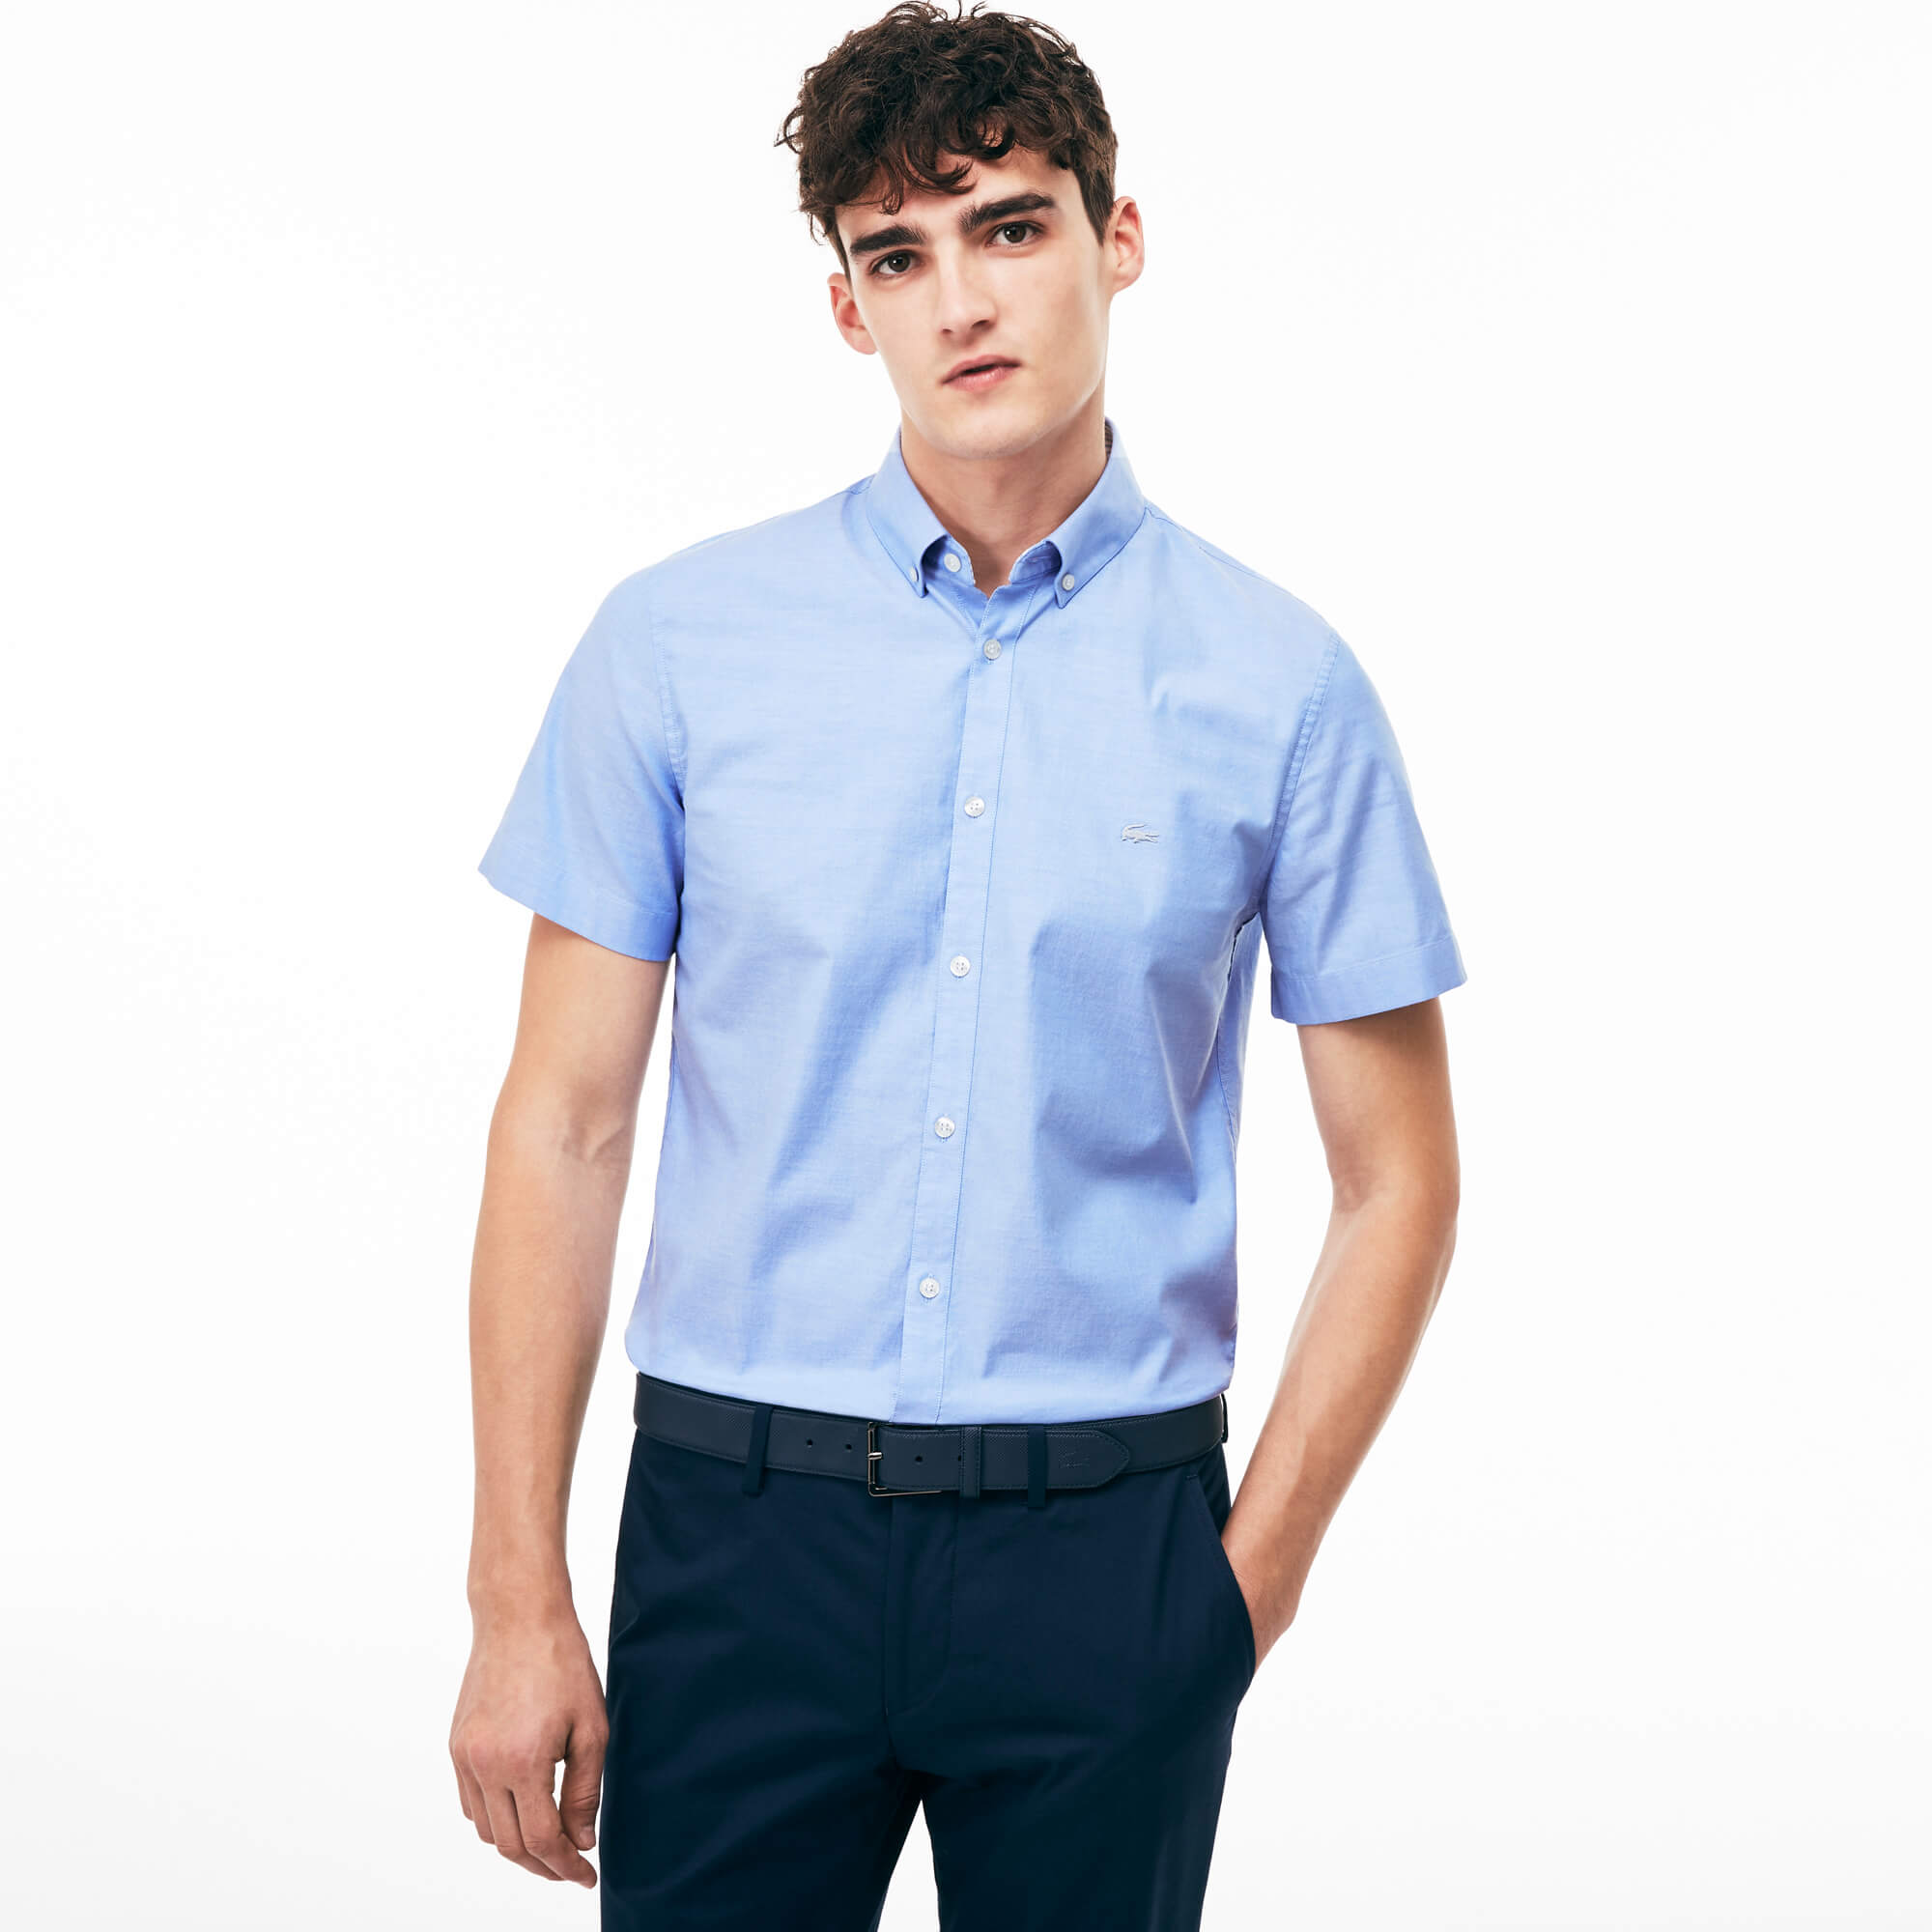 Рубашка с коротким рукавом. Рубашка Lacoste Regular Fit. Рубашка мужская лакост голубая. Рубашка лакост мужские. Рубашка мужская с коротким рукавом лакоста.